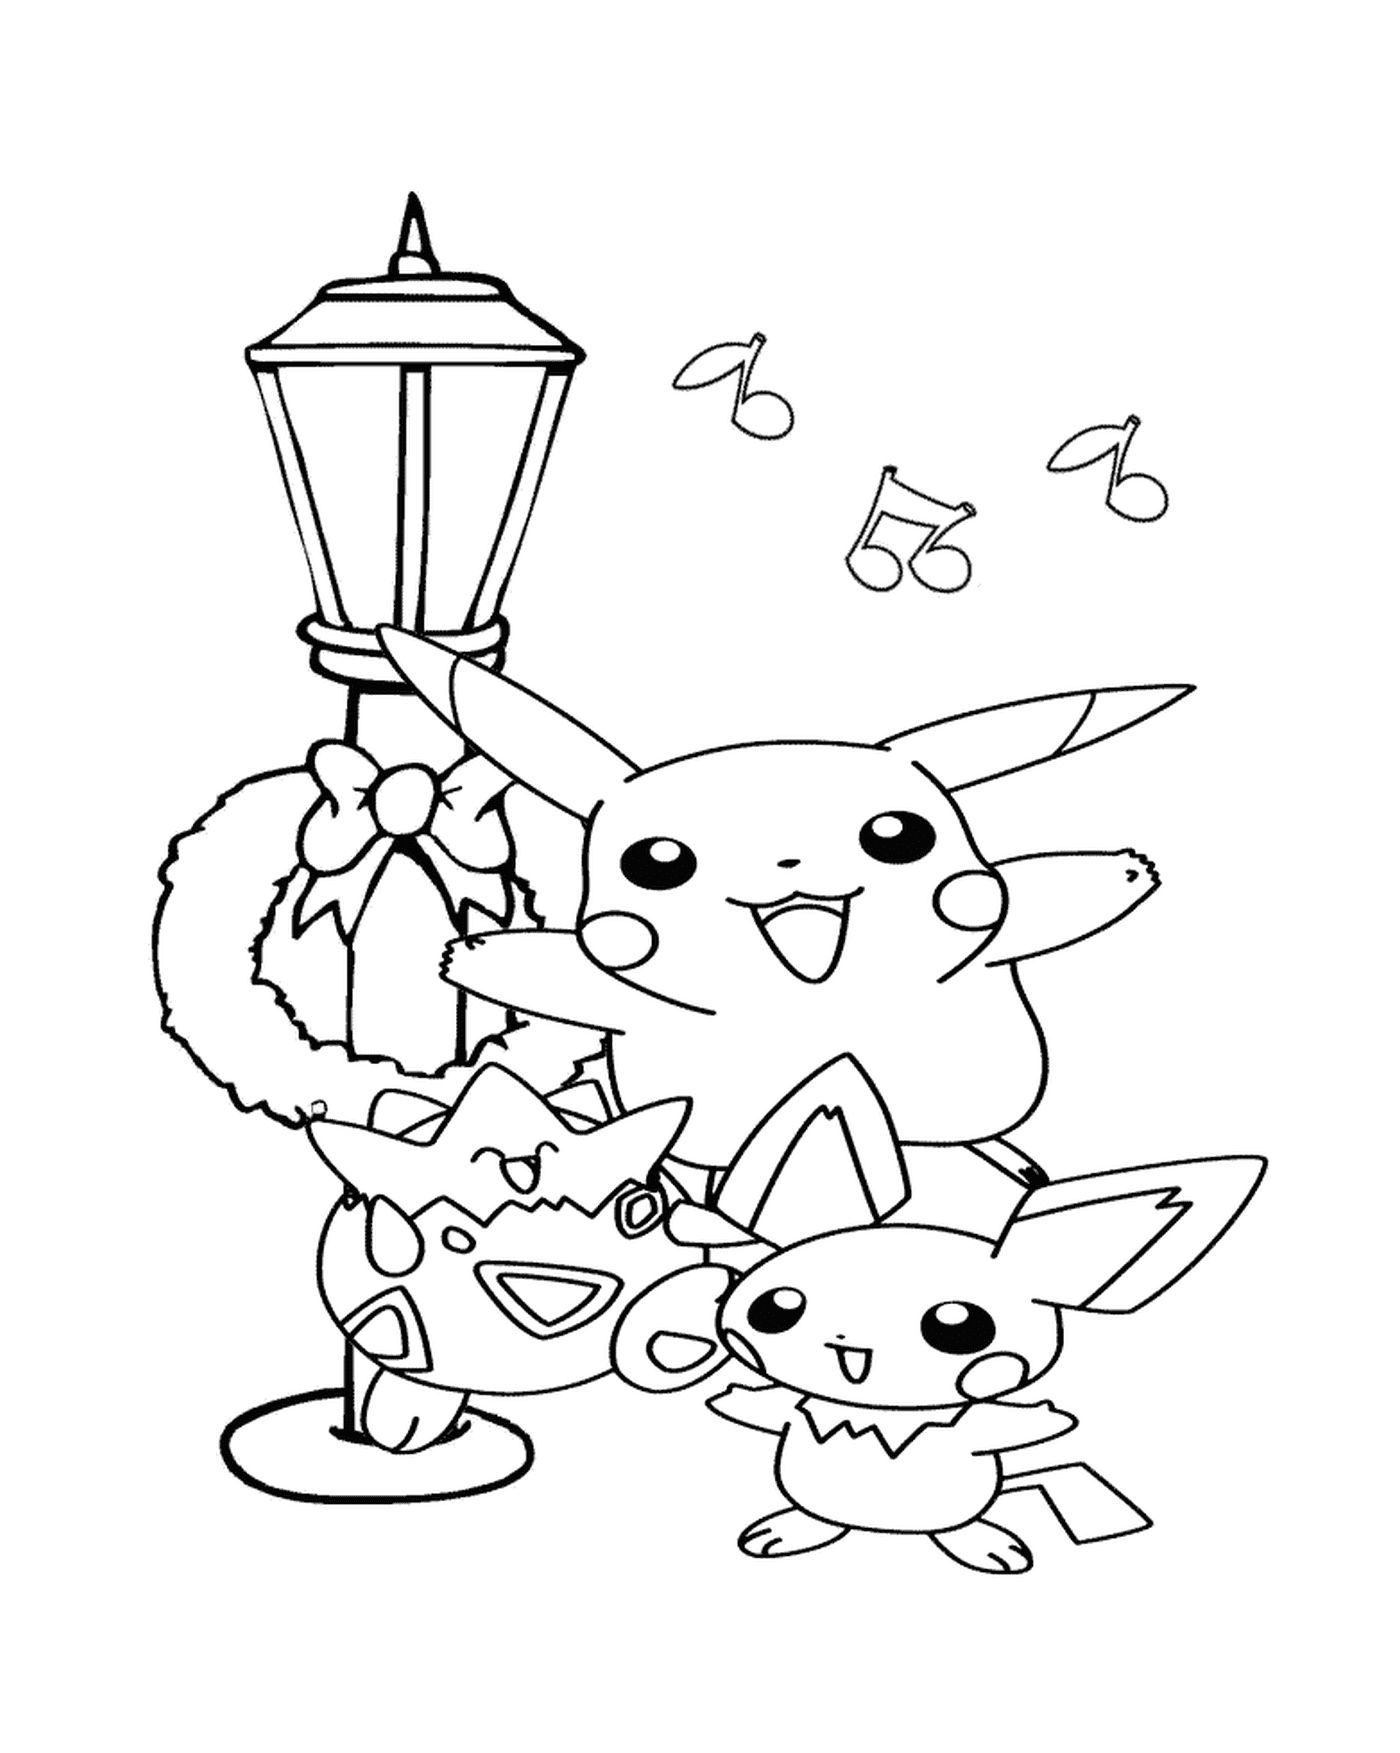   Pikachu et ses amis chantent 